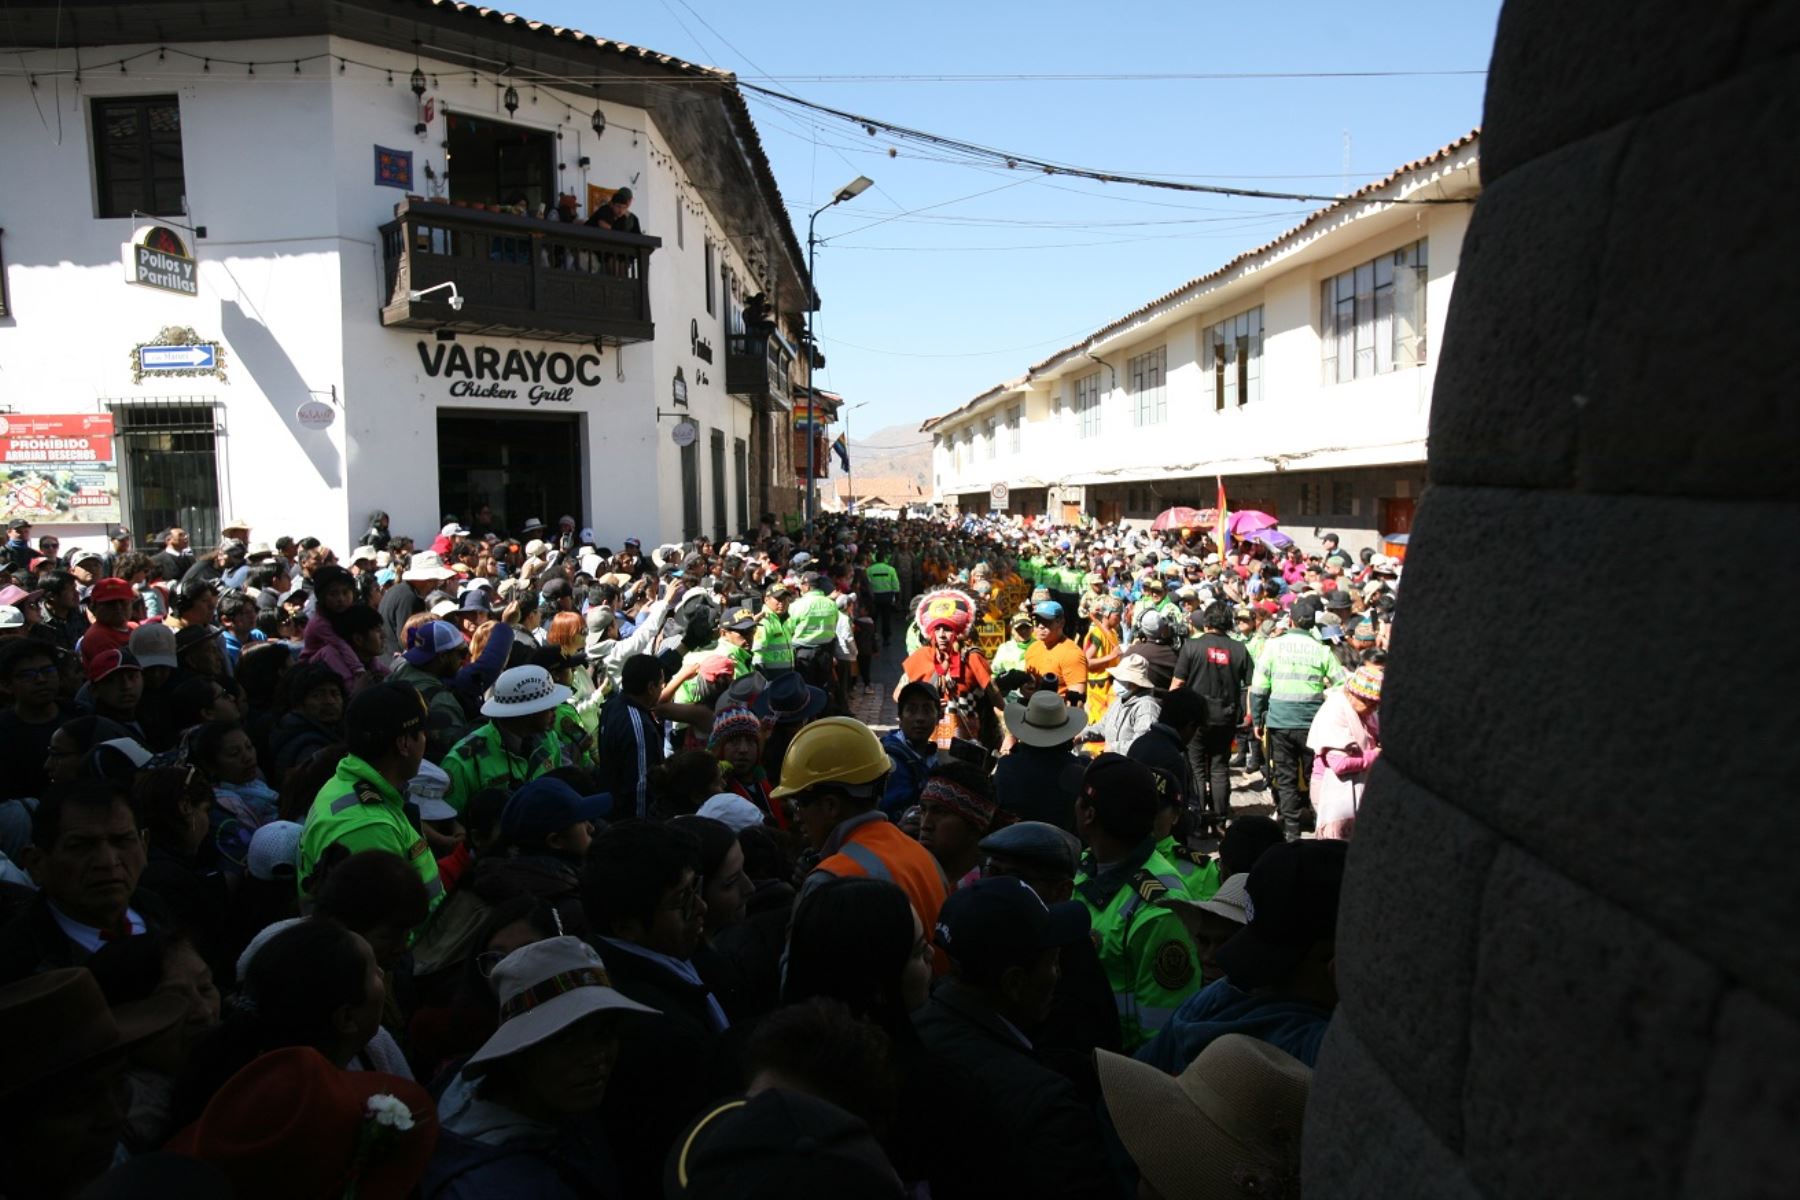 El Inti Raymi, que tiene tres escenarios, se escenificó el 24 de junio, día central de las fiestas jubilares del Cusco. Foto: ANDINA/Cortesía Percy Hurtado